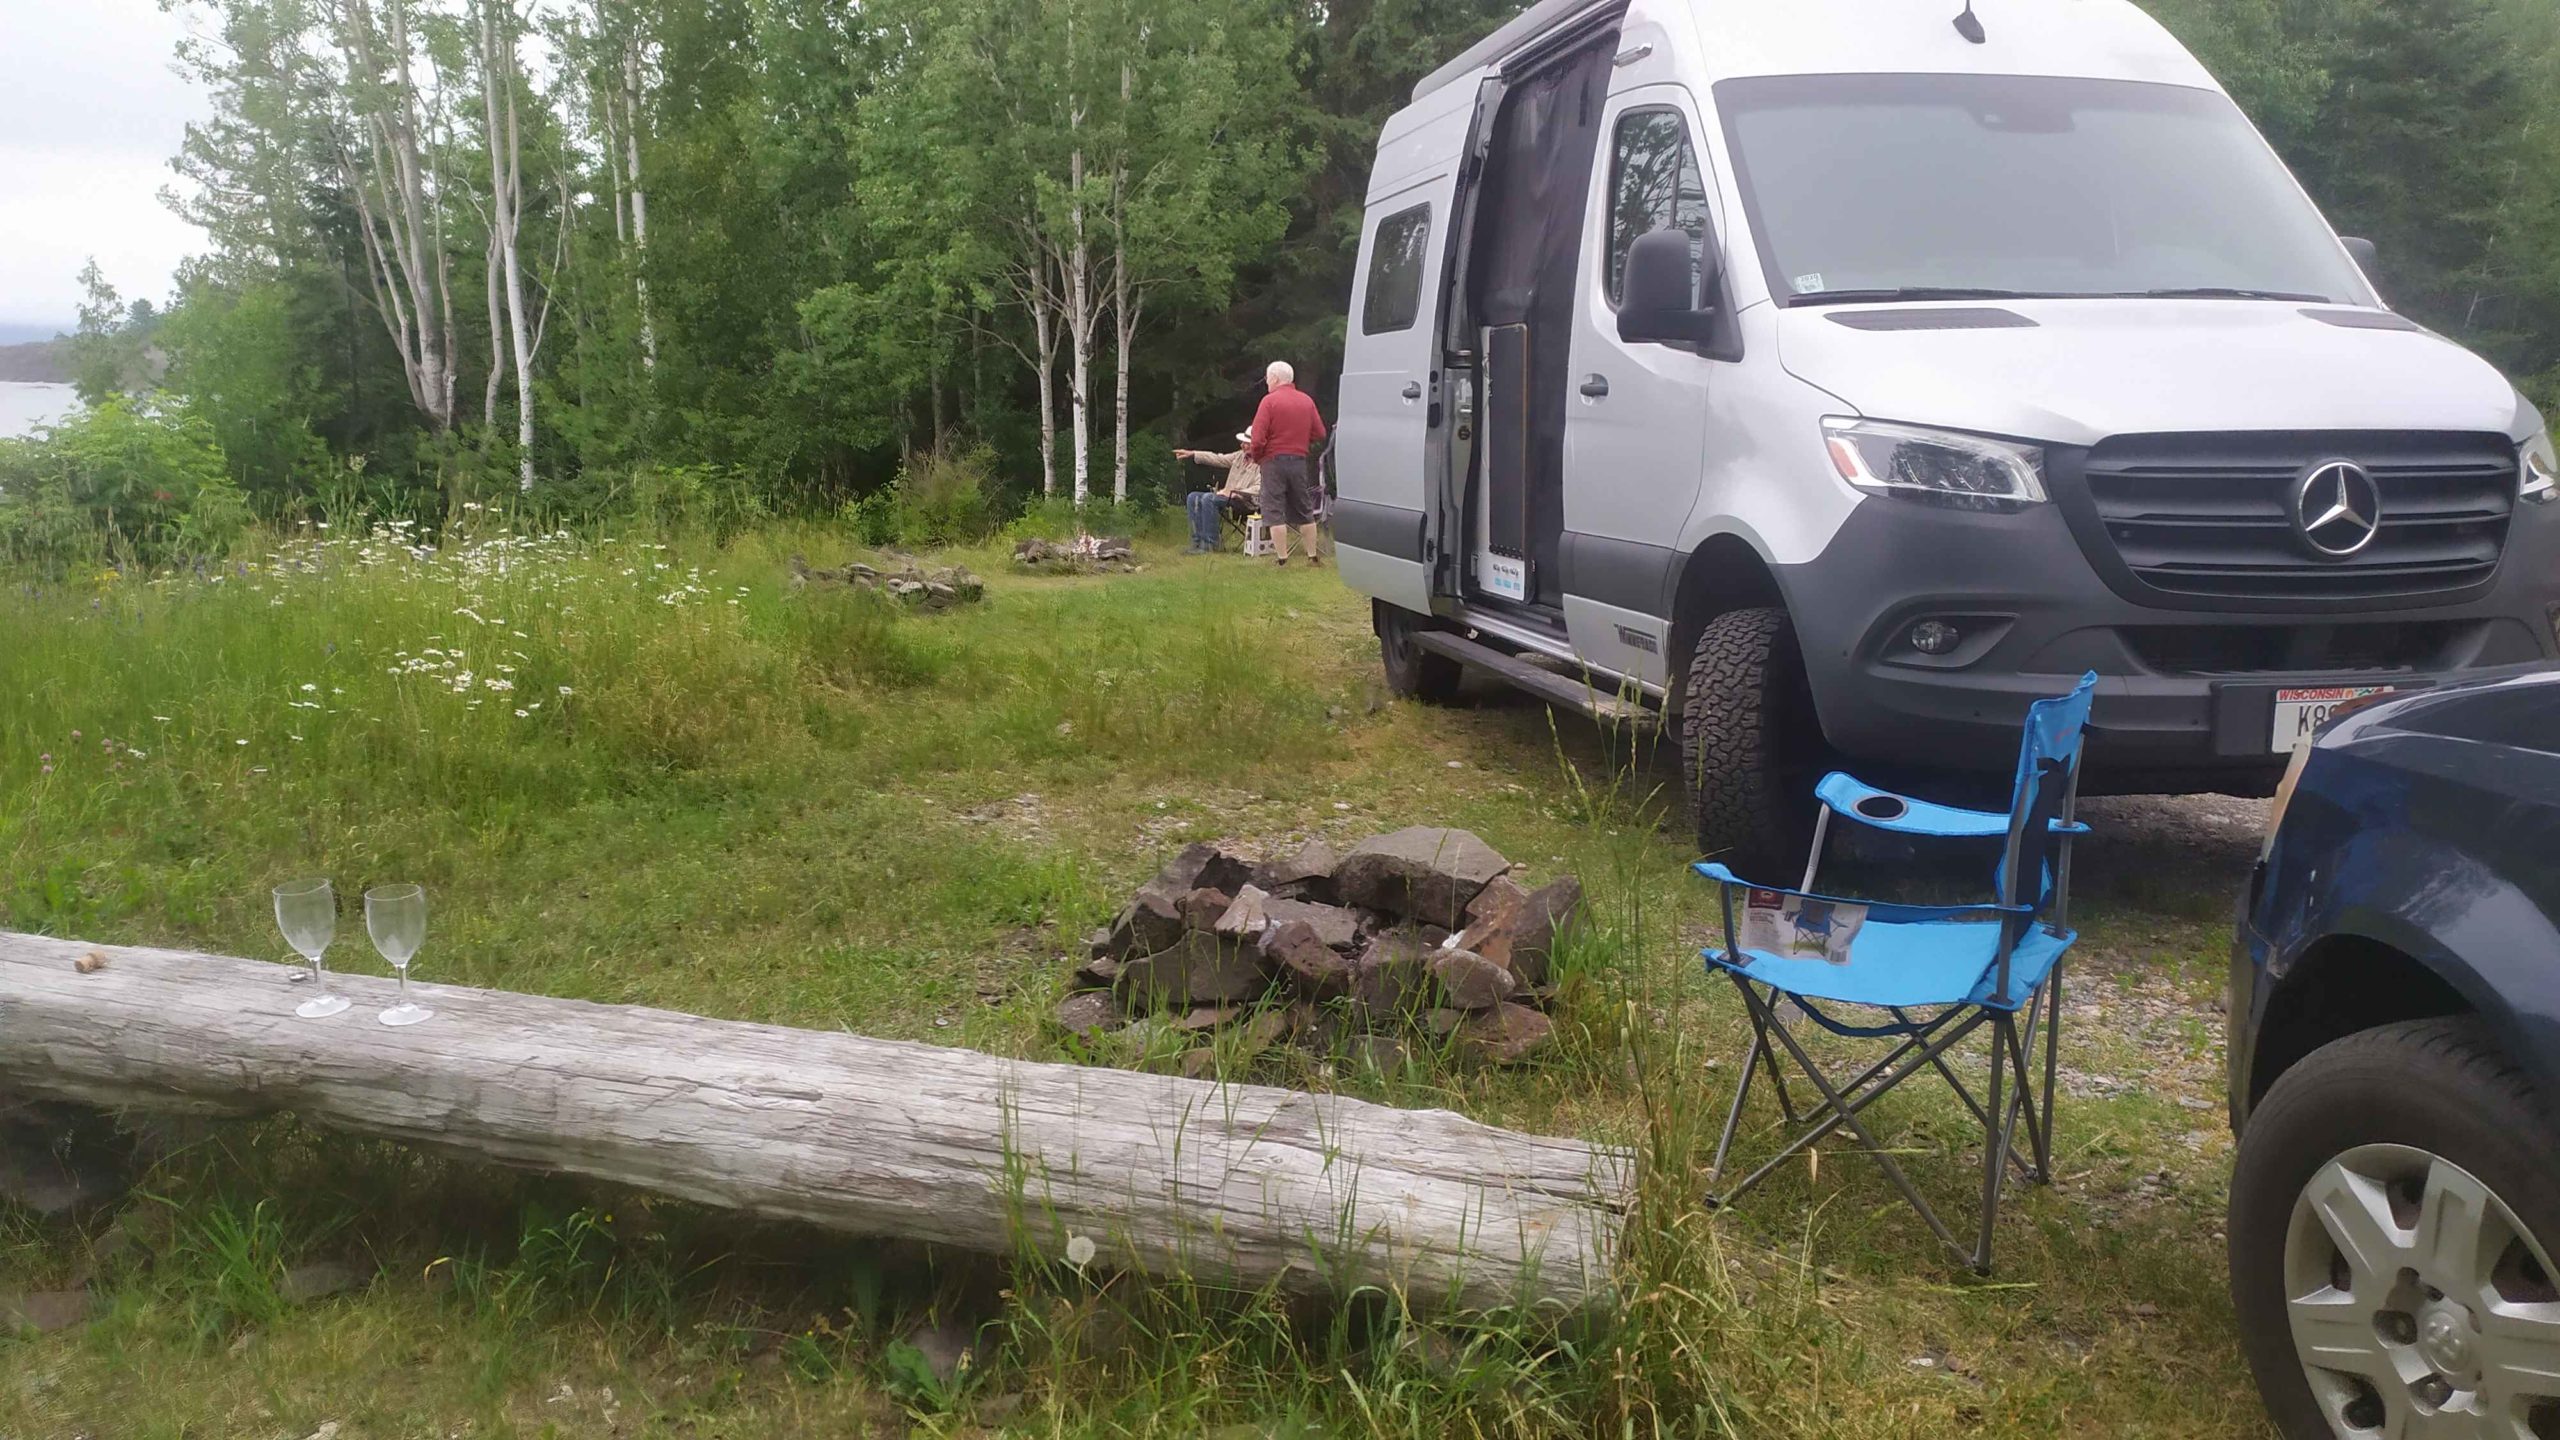 un van avec une porte ouverte ainsi qu'une chaise de camping dépliée Deux coupes à champagne en plastique sont déposés sur un rondin de bois